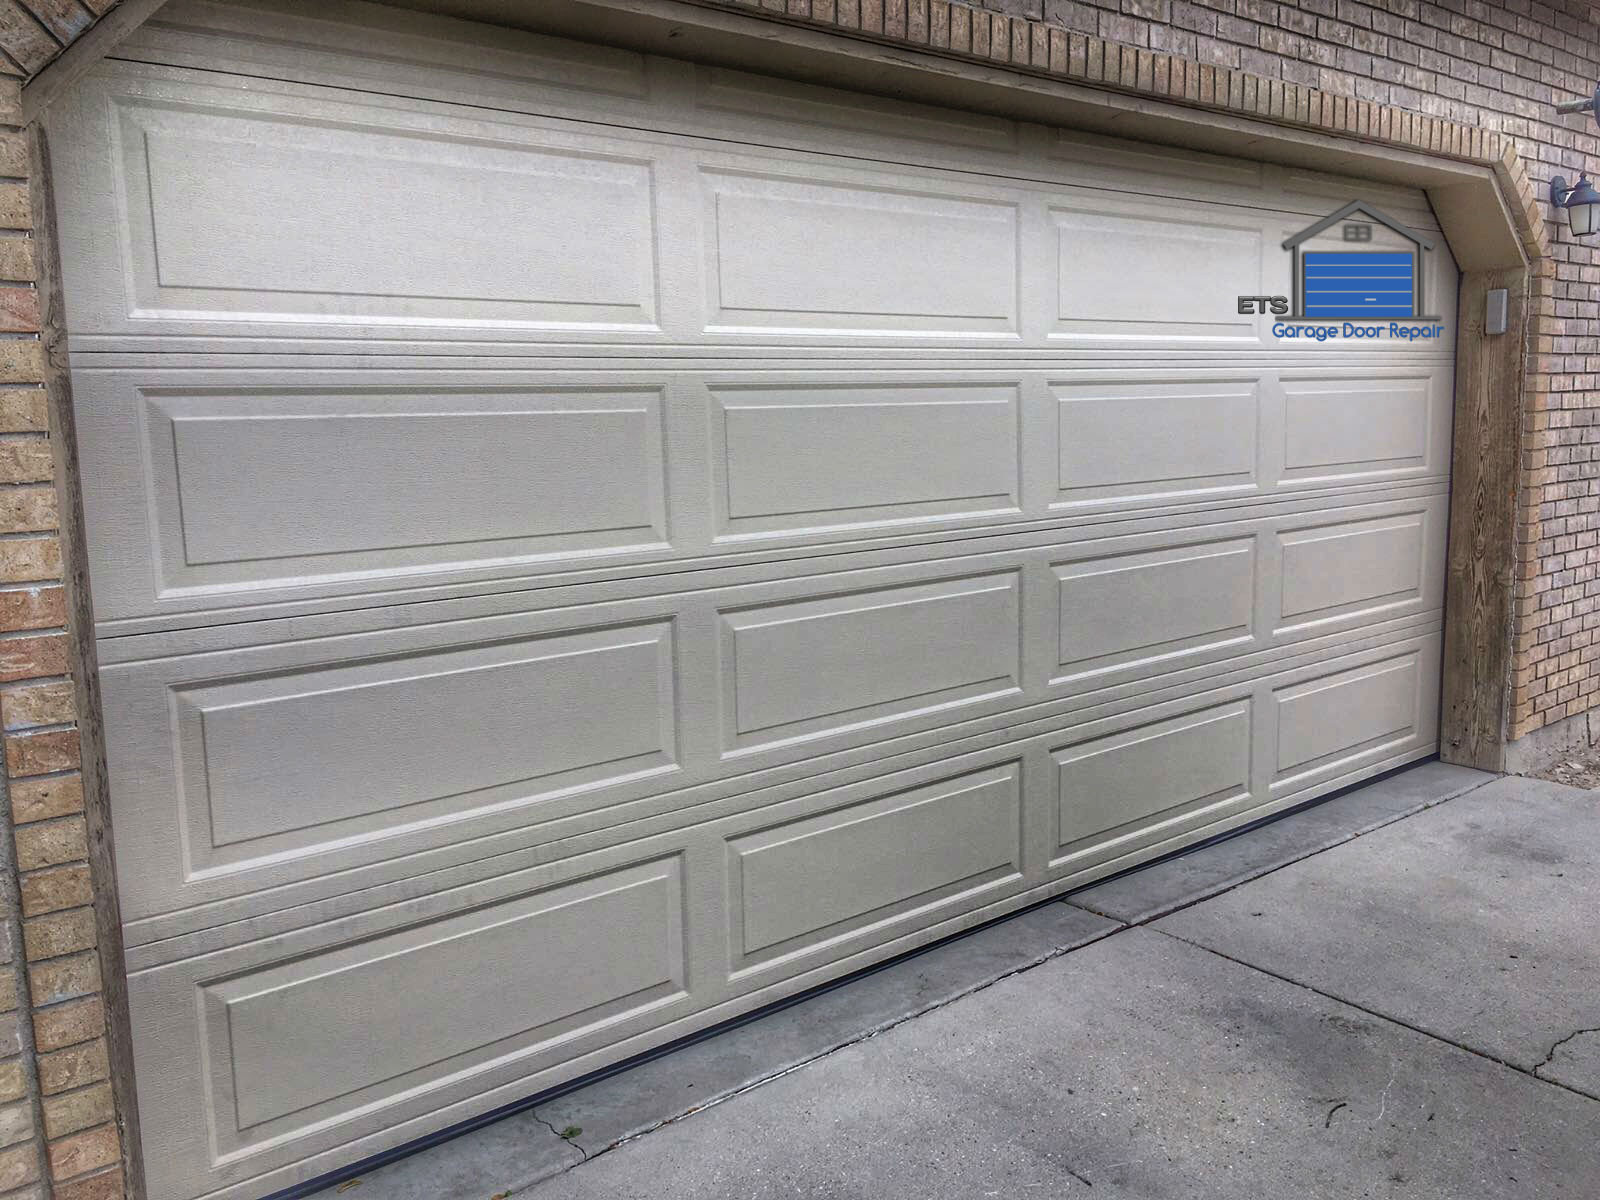 ETS Garage Door Repair Of Beaverton - Garage Door Repair & Installation Services1